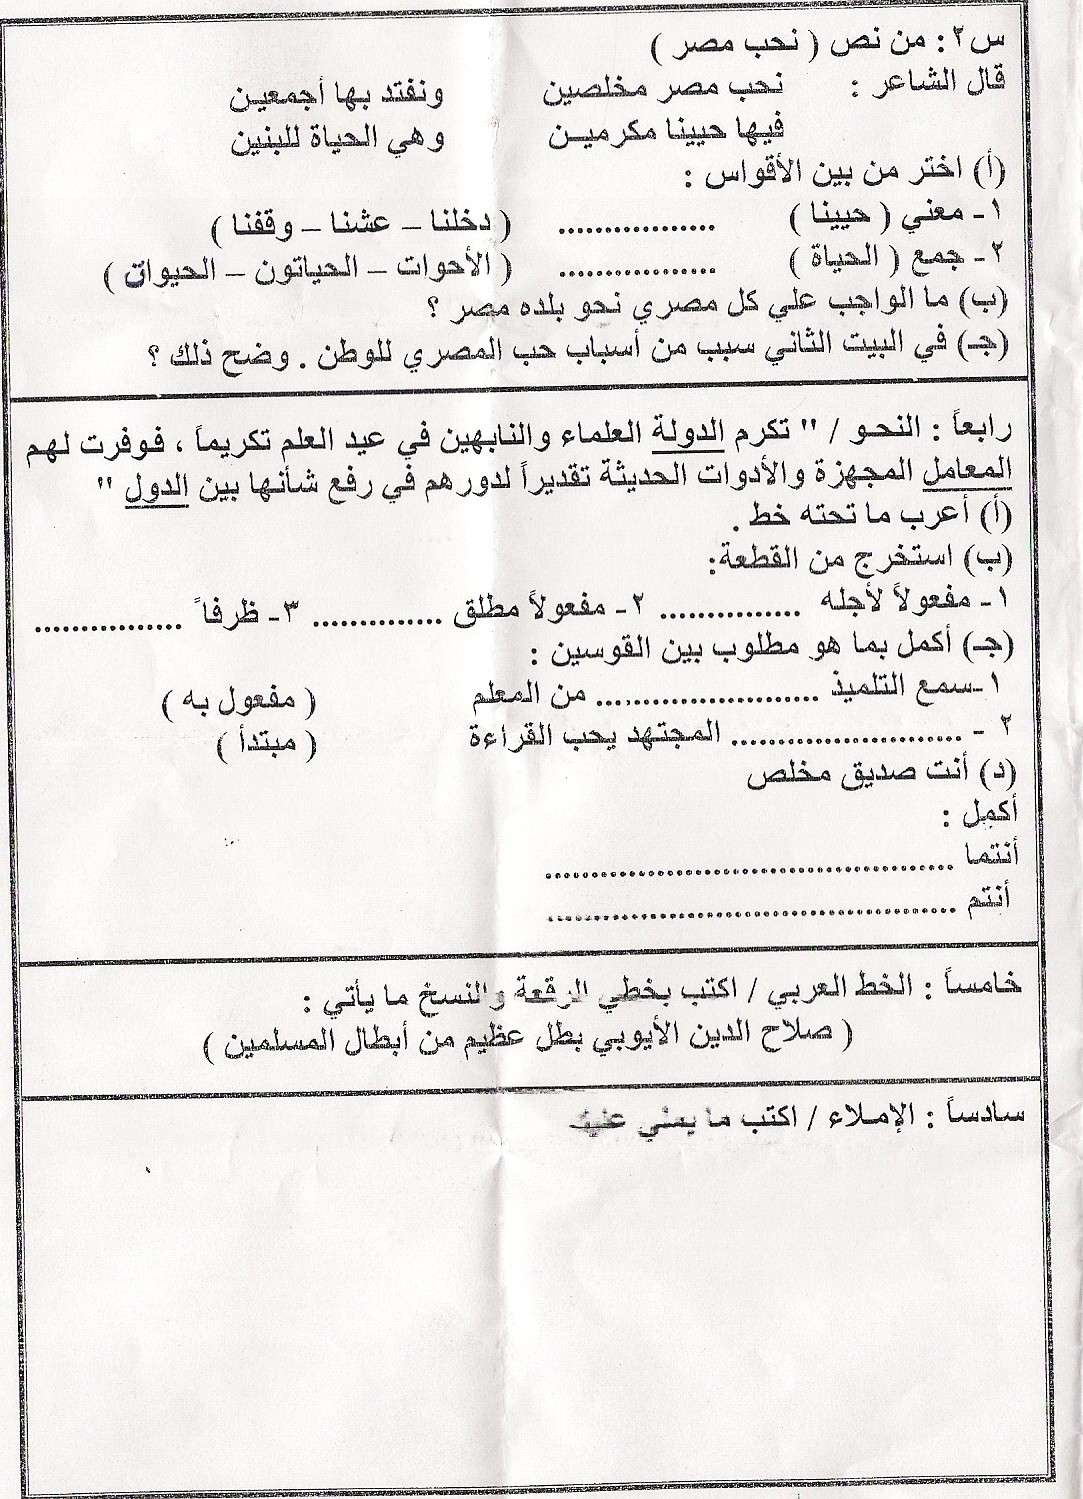 امتحان اللغة العربية الخامس الابتدائى مدرسة وحدة وادى النيل برشيد  Ououoo11